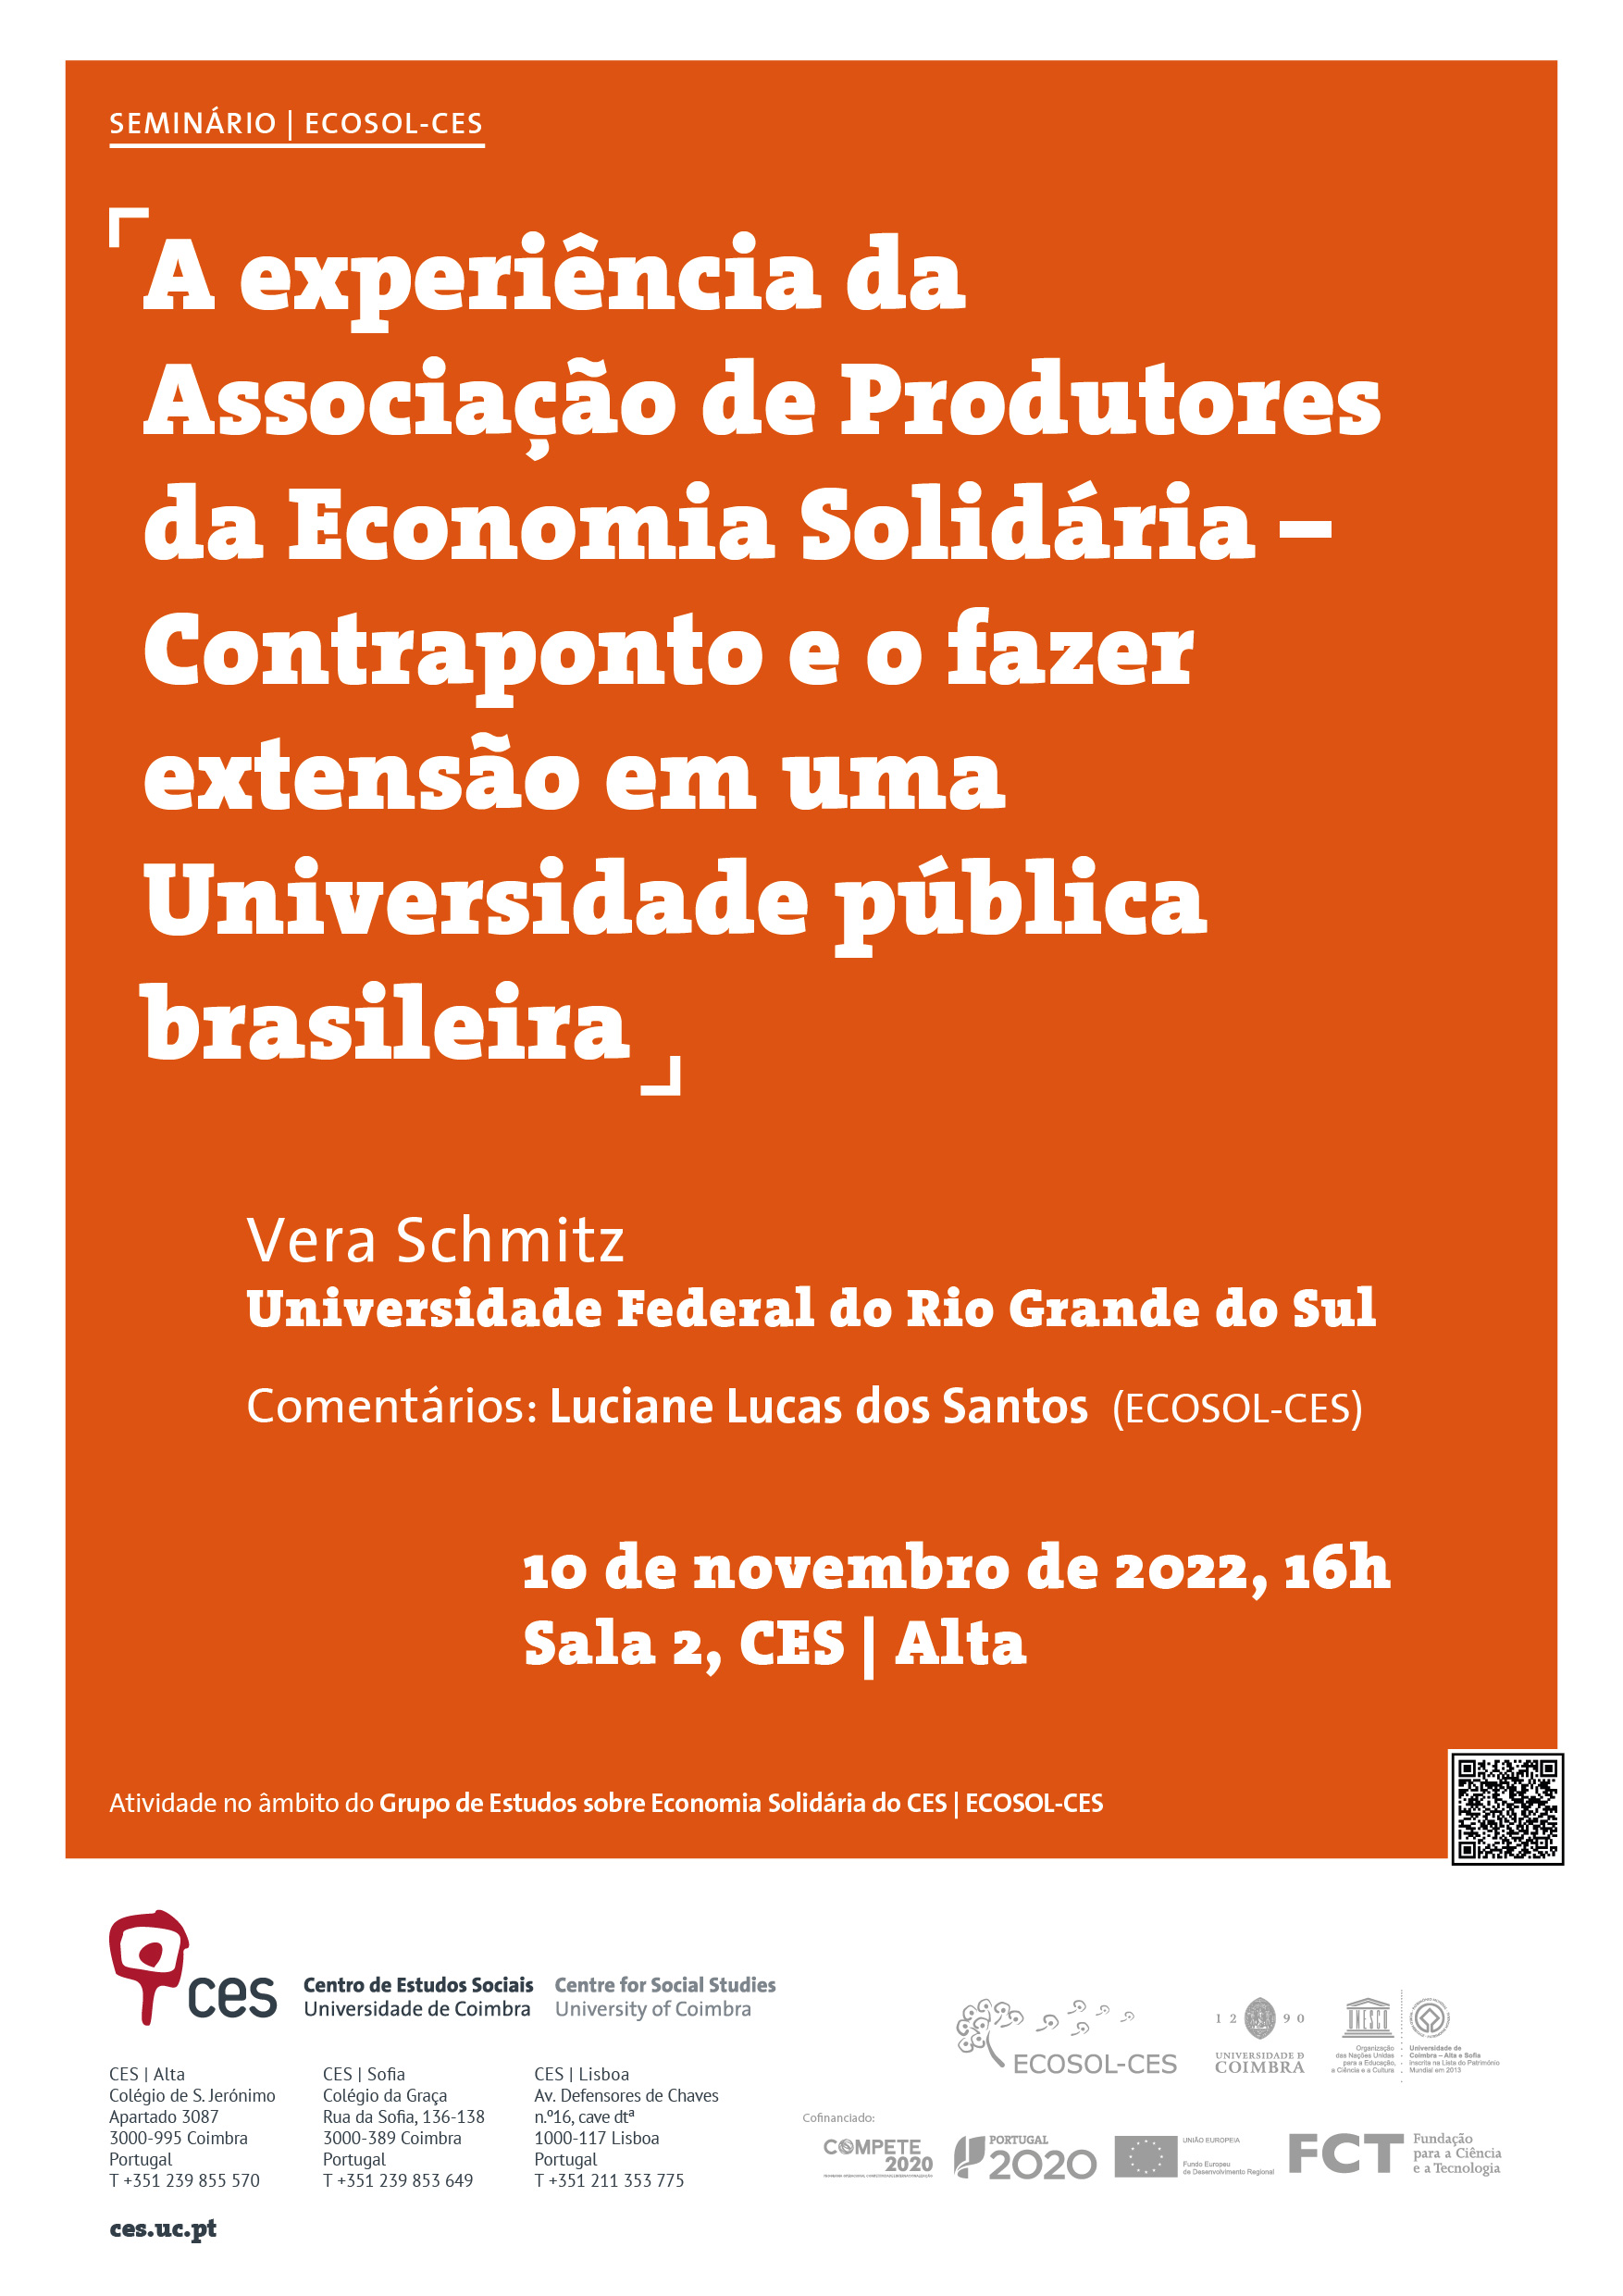 A experiência da Associação de Produtores da Economia Solidária – Contraponto e o fazer extensão em uma Universidade pública brasileira<span id="edit_40756"><script>$(function() { $('#edit_40756').load( "/myces/user/editobj.php?tipo=evento&id=40756" ); });</script></span>